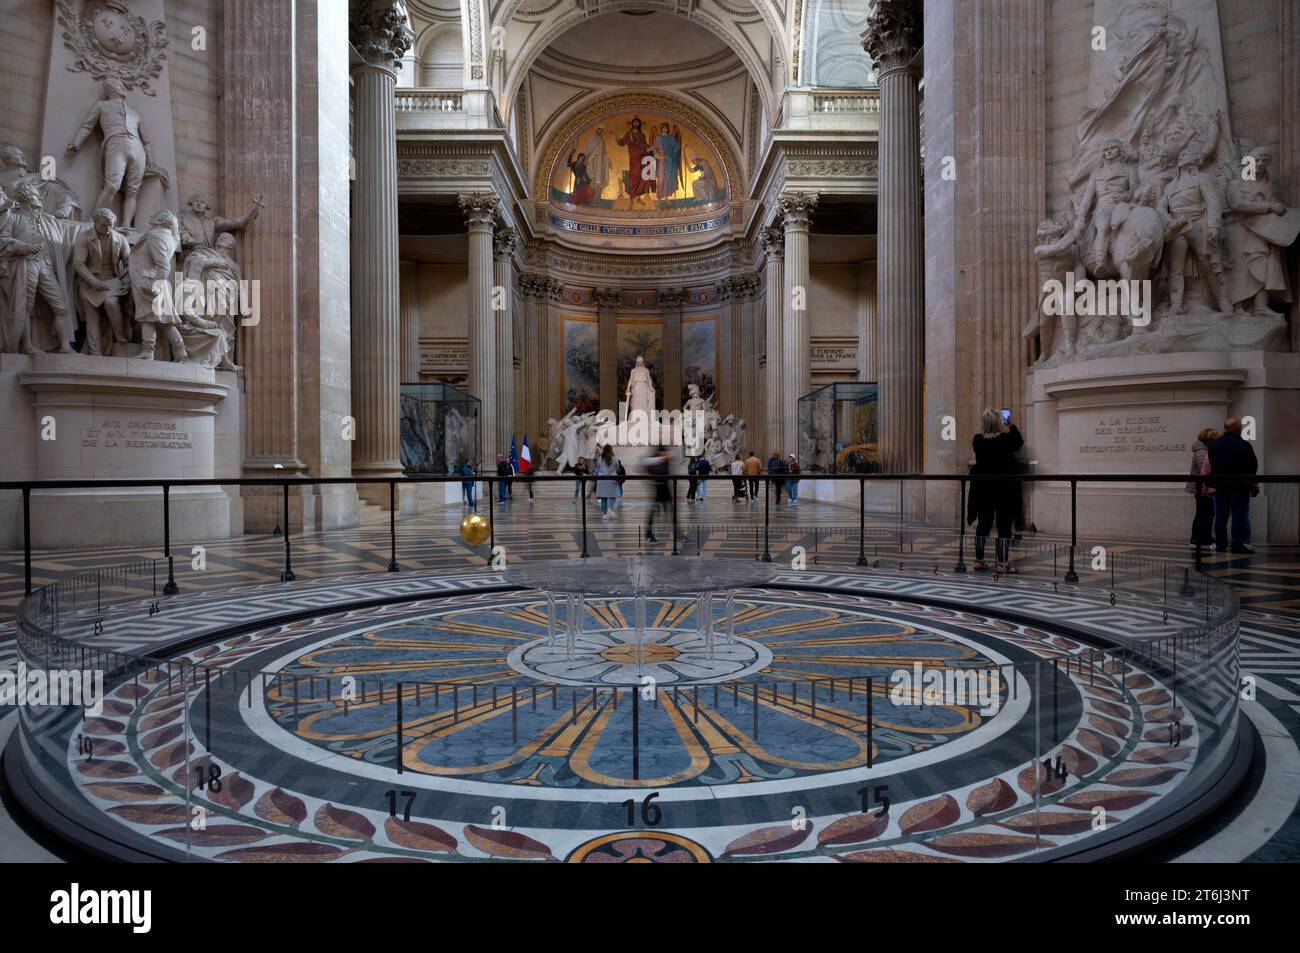 Interior, visitante, péndulo de Foucault solía probar empíricamente la rotación de la tierra, Panteón Salón Nacional de la Fama, Montagne Sainte-Geneviève o Colina de Saint Genoveva, París, Francia. Foto de stock